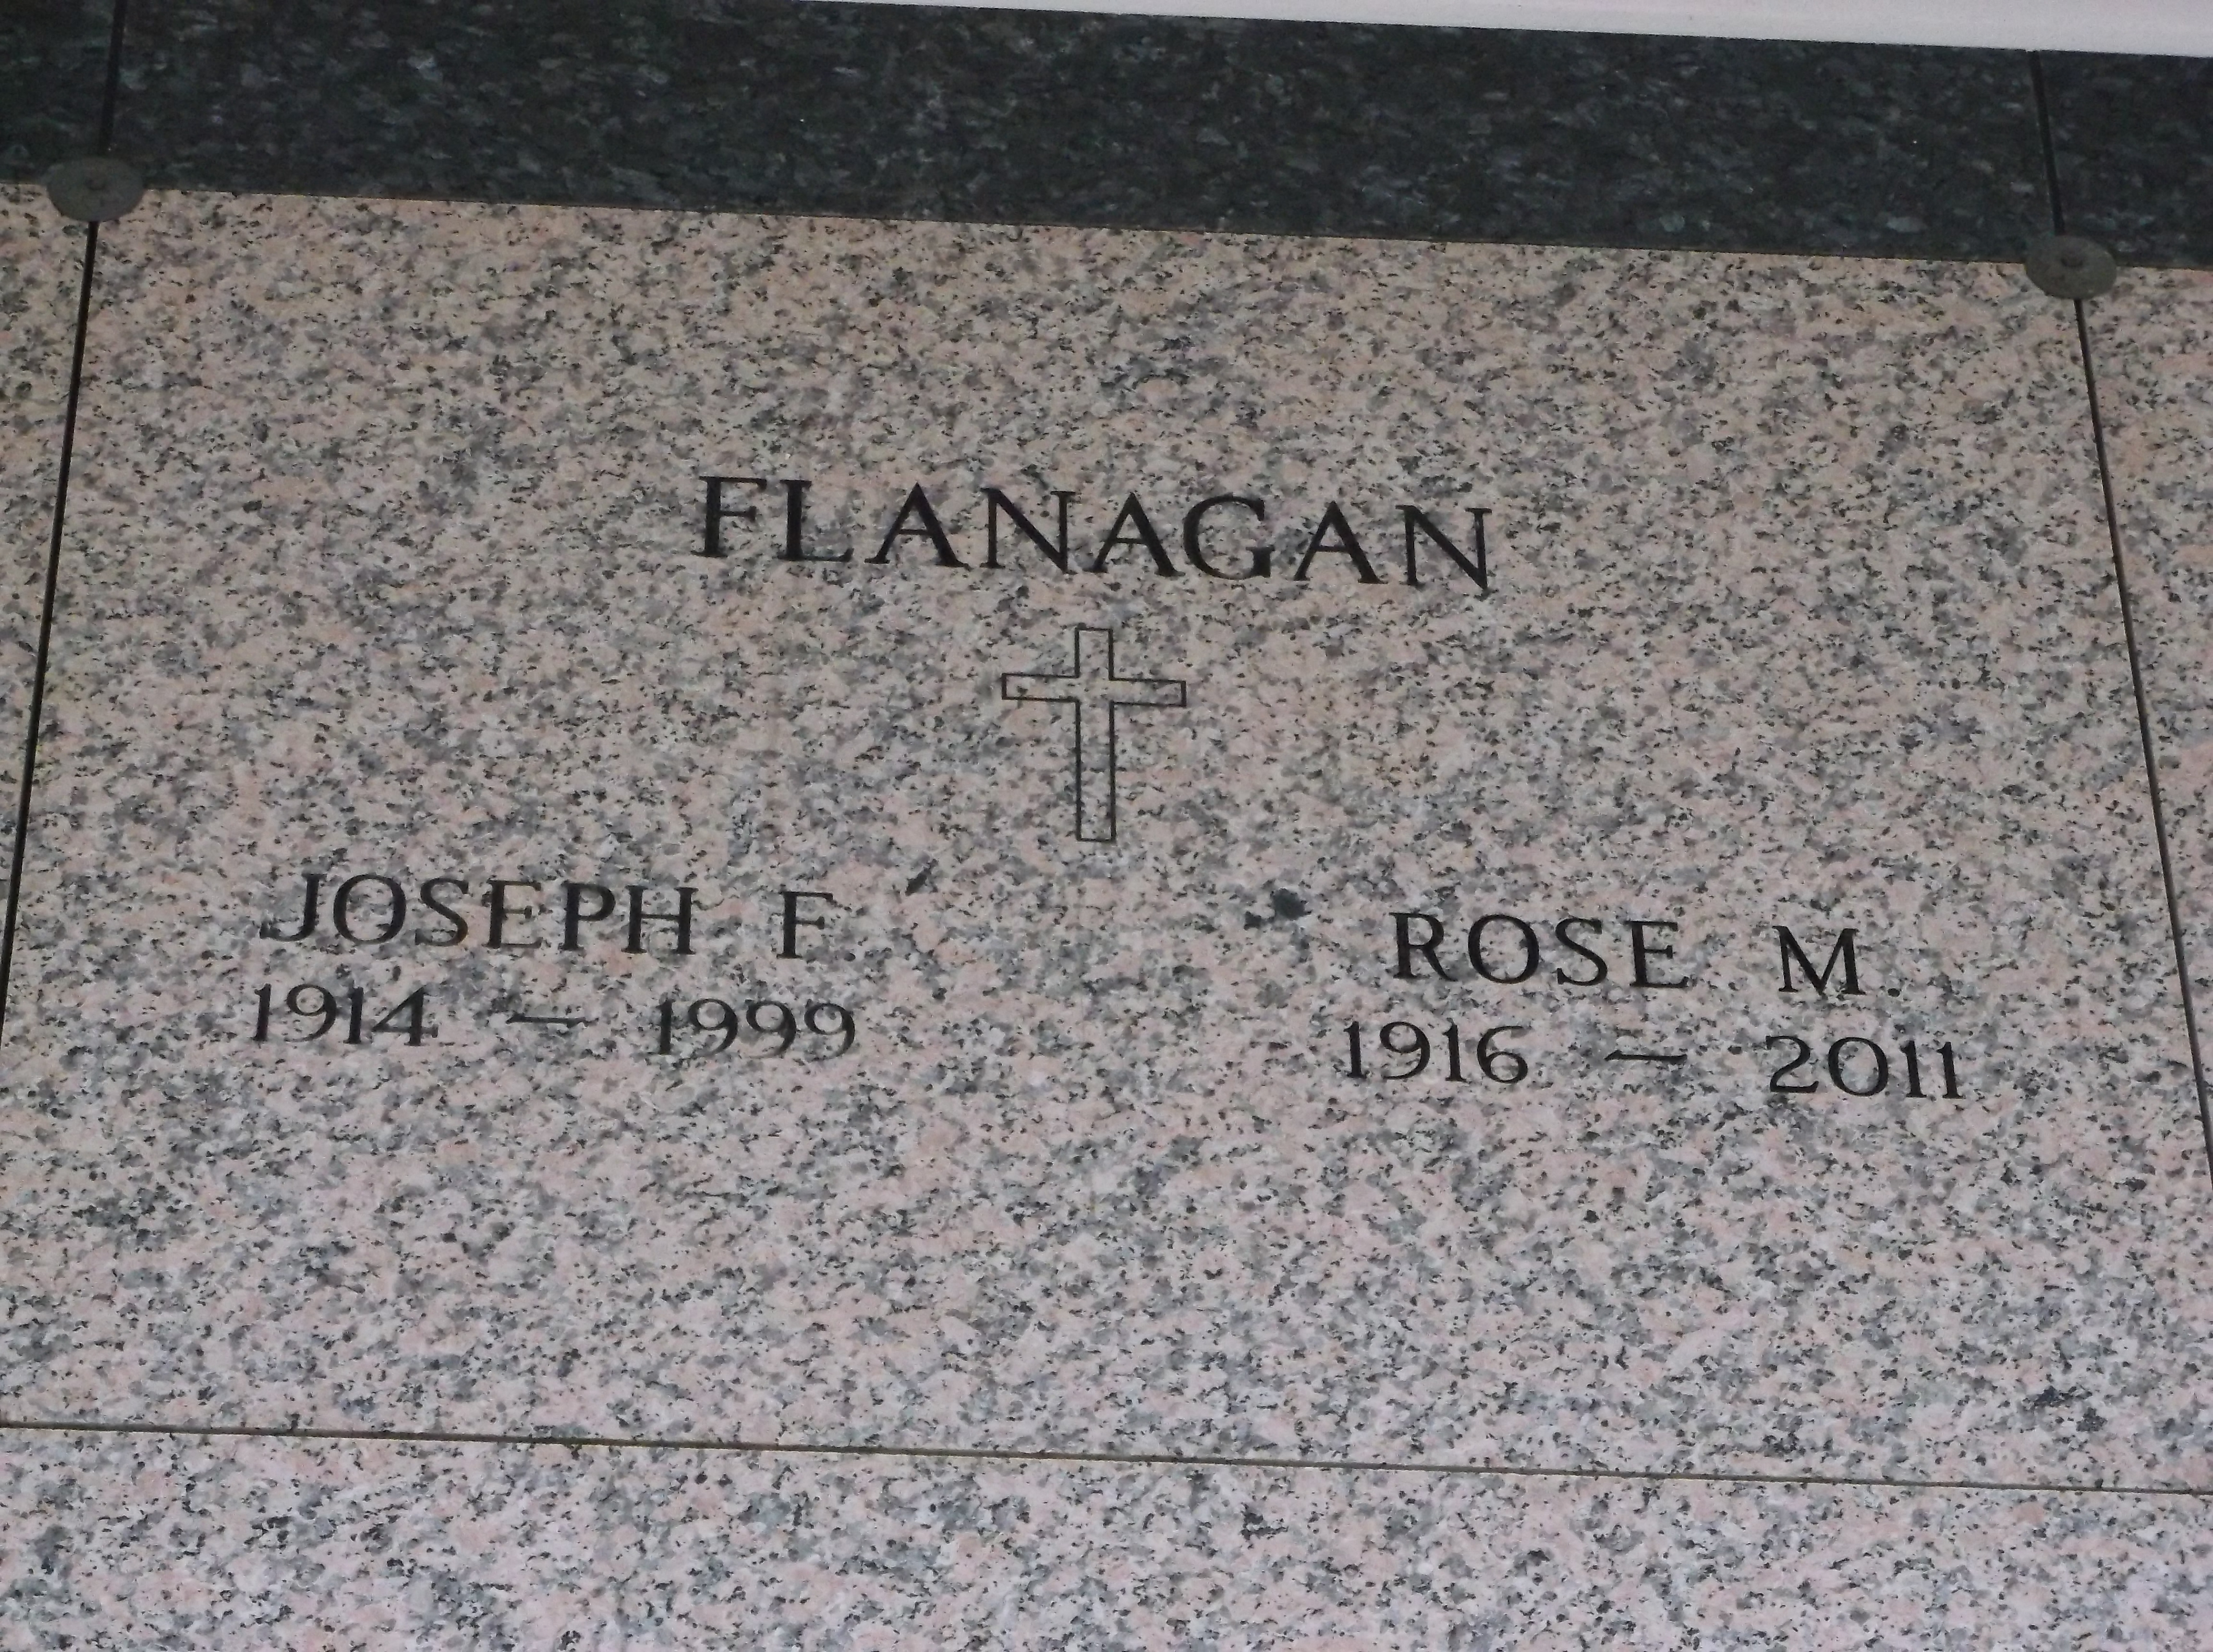 Rose M Flanagan